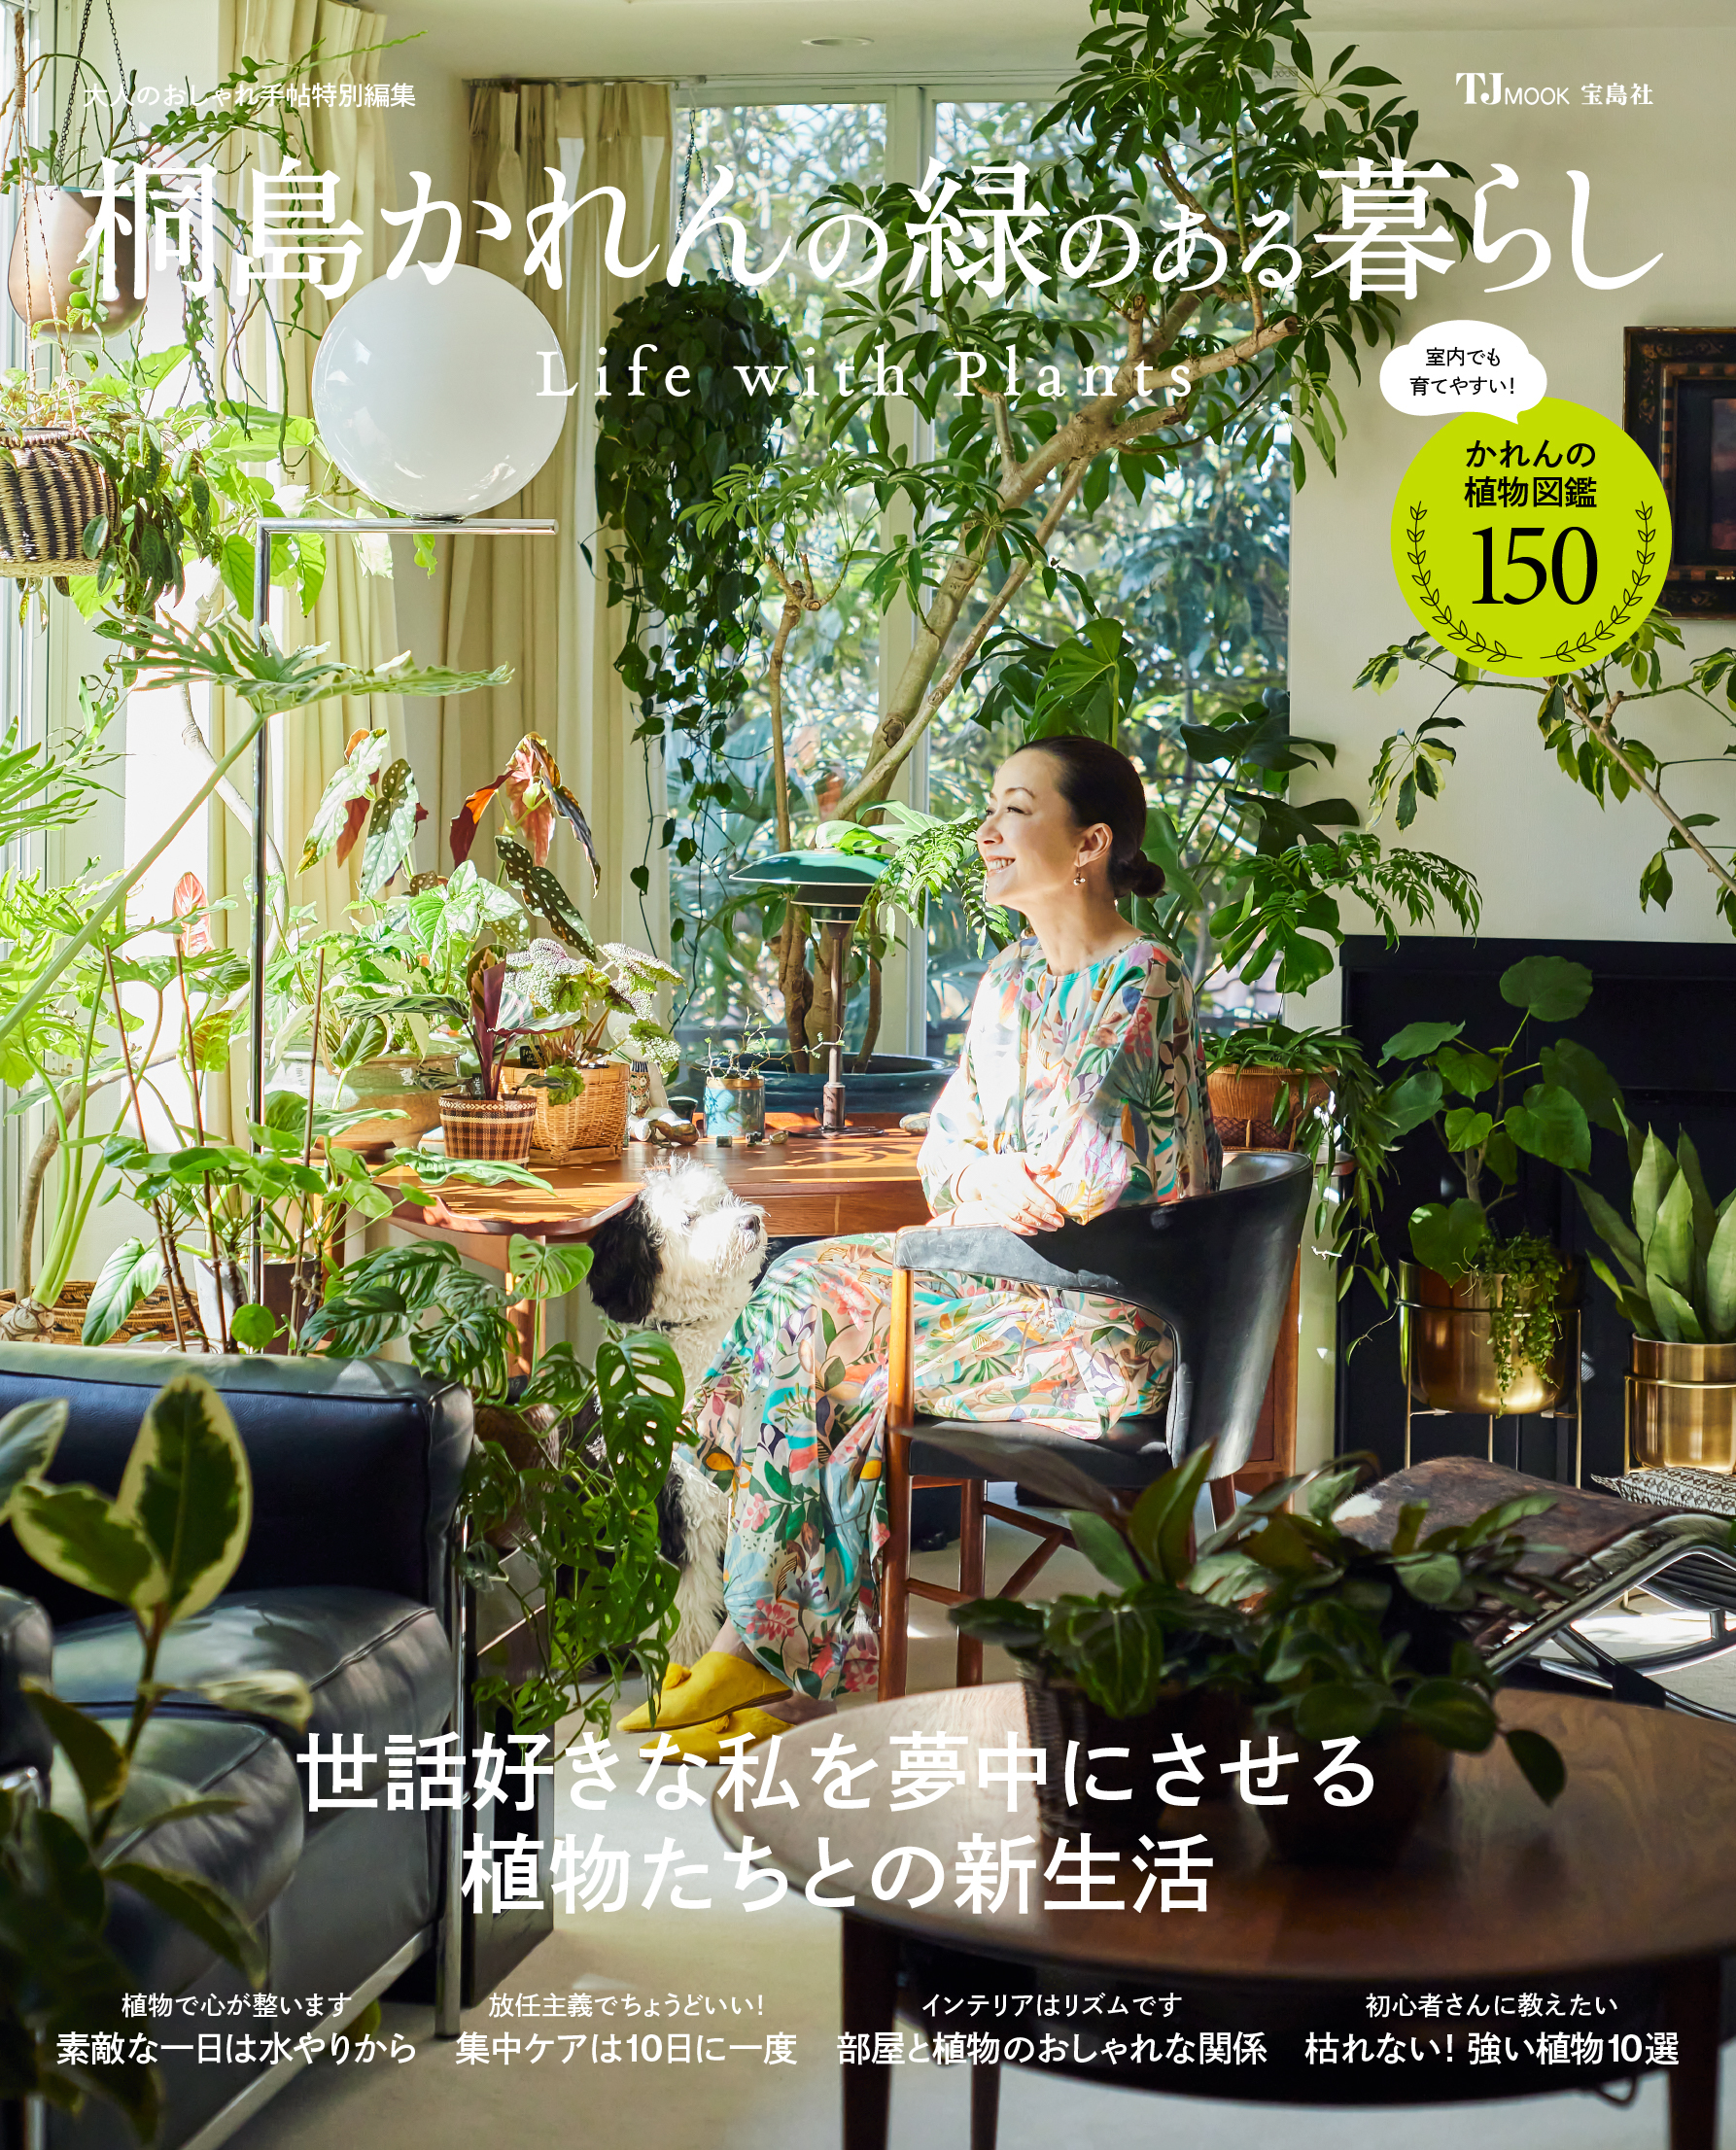 育てる植物は150種類以上 モデル桐島かれんのみどりあるセンスのよい暮らしを徹底公開 株式会社 宝島社のプレスリリース